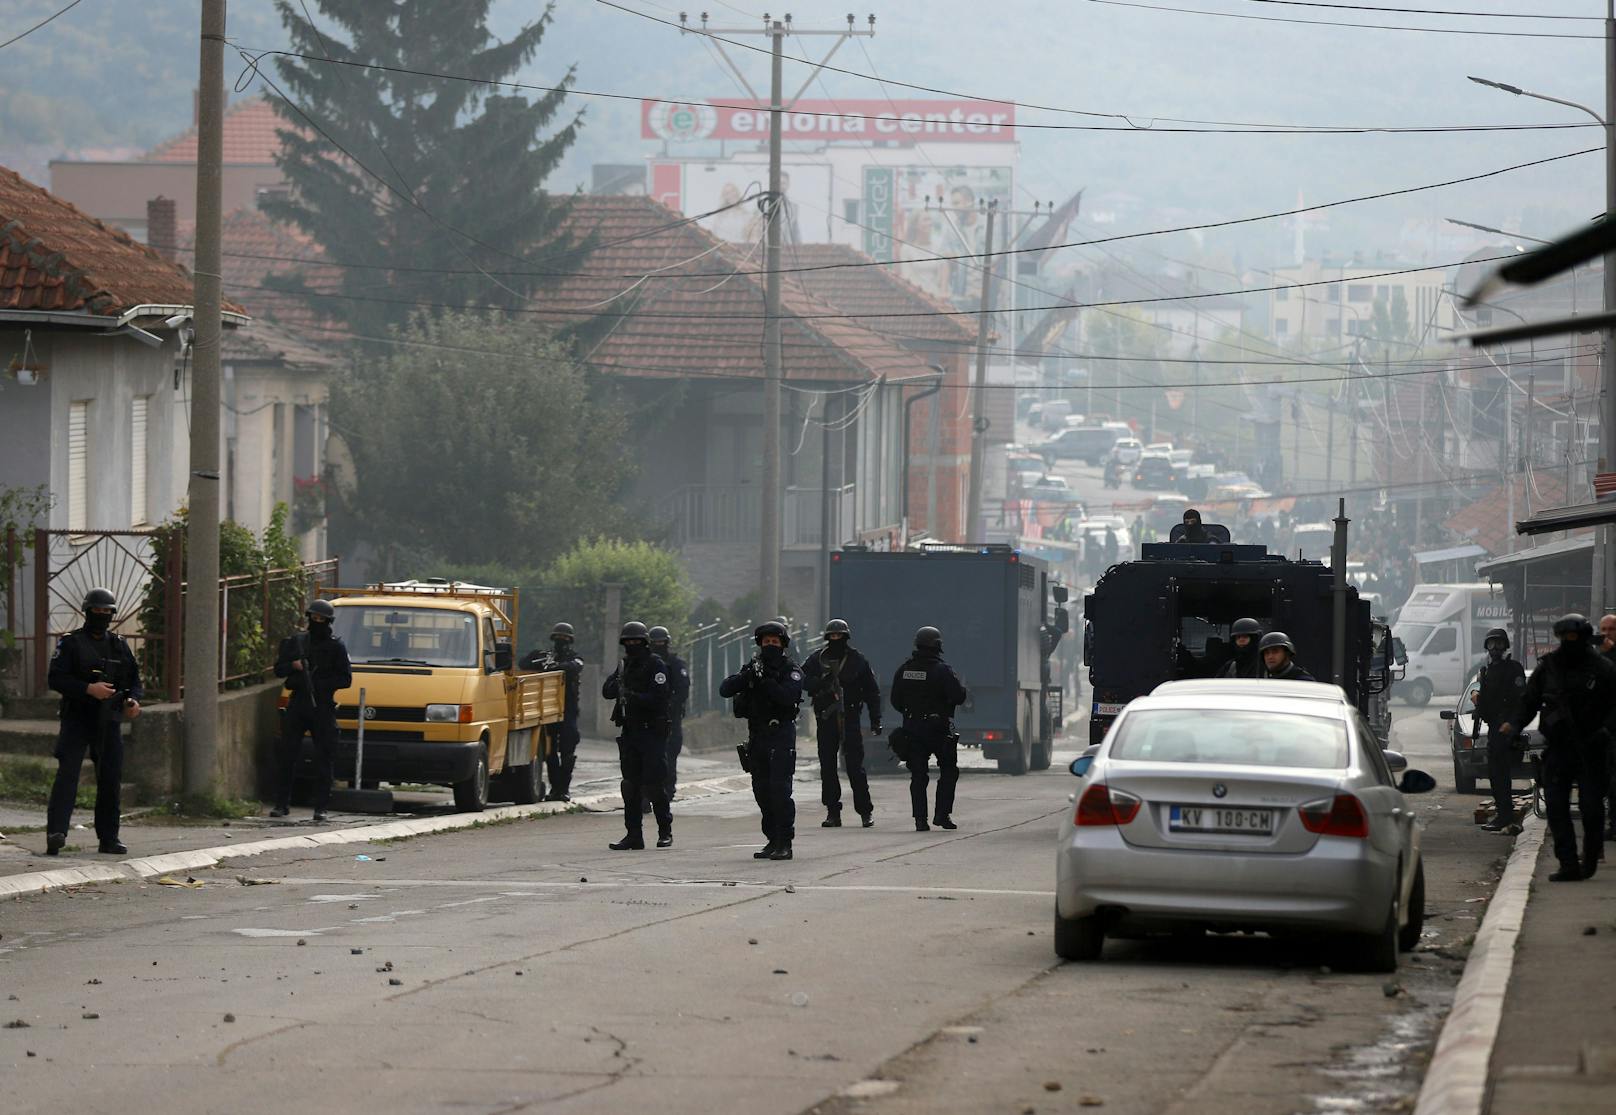 Laut Angaben des Premierministers von Kosovo, Albin Kurti, handelte es sich bei dem Zugriff um einen Einsatz im Kampf gegen Kriminalität und Schmuggel.